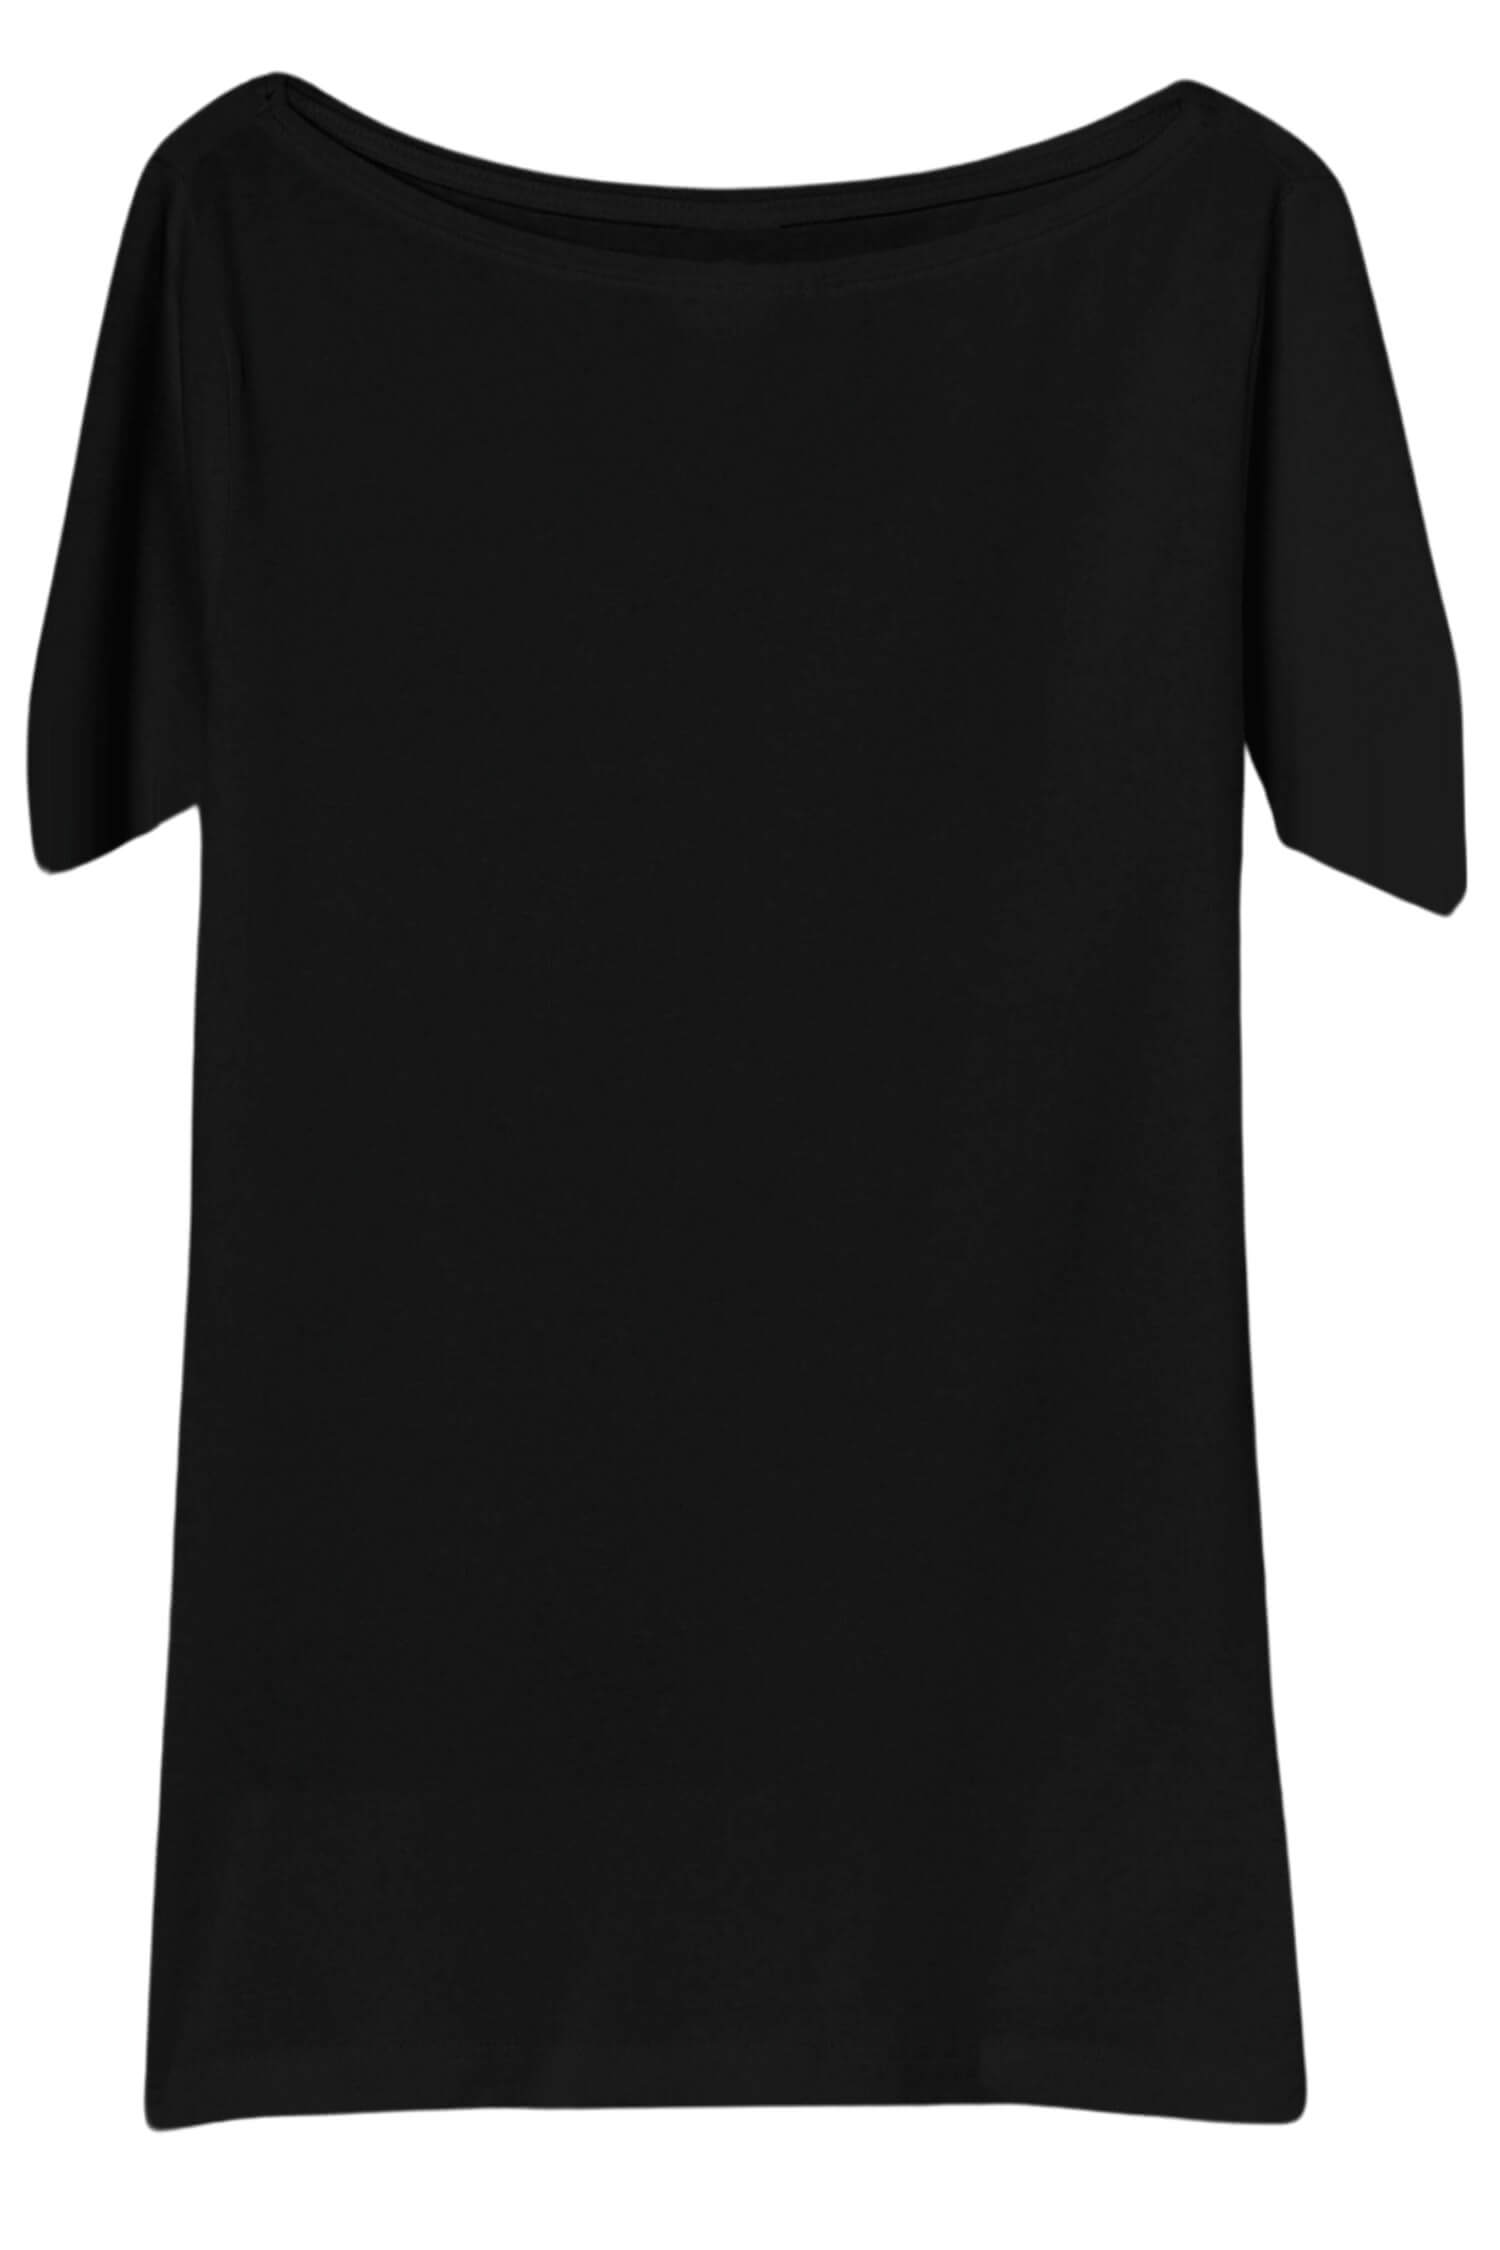 Danica dámské tričko s krátkým rukávem TSK-1005 černá XL